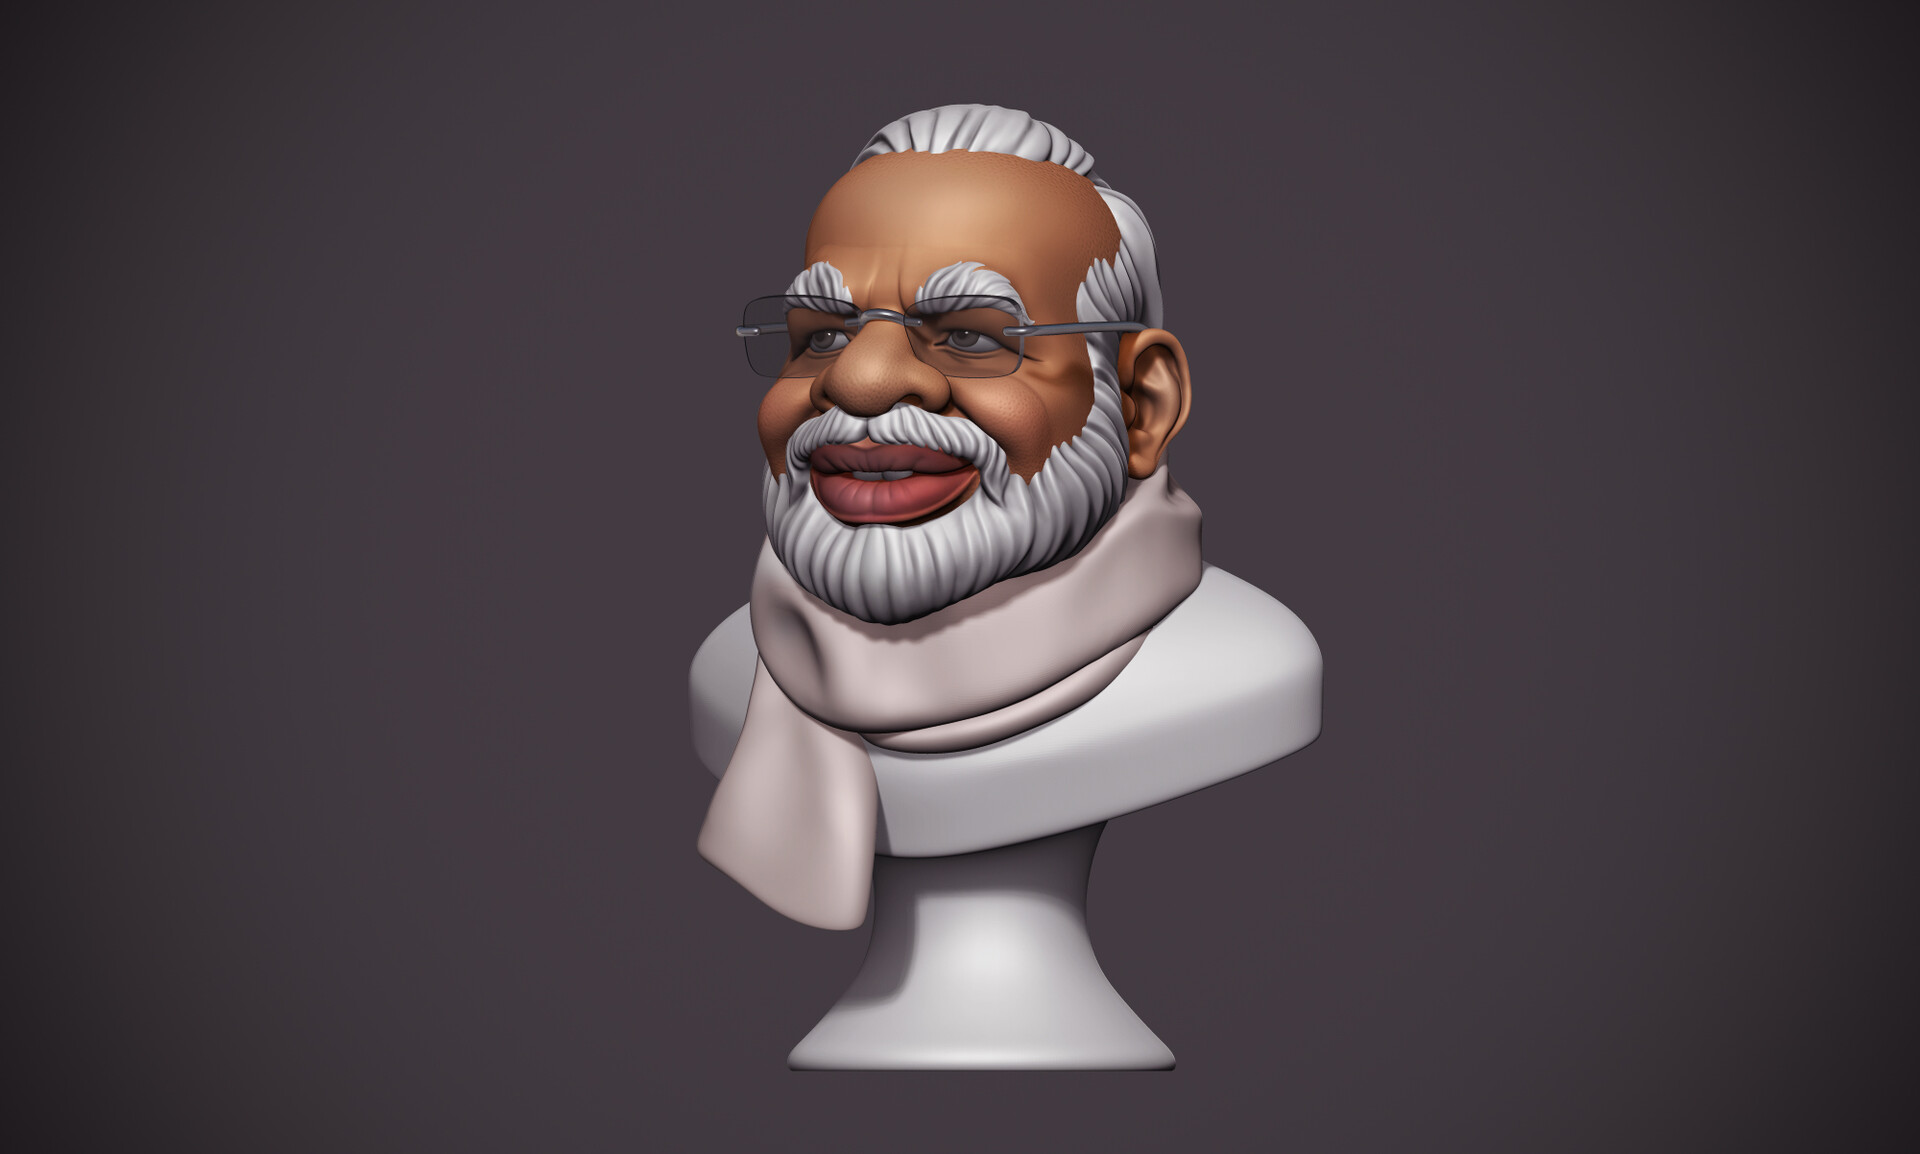 ArtStation - Modi Cartoonish Sculpt